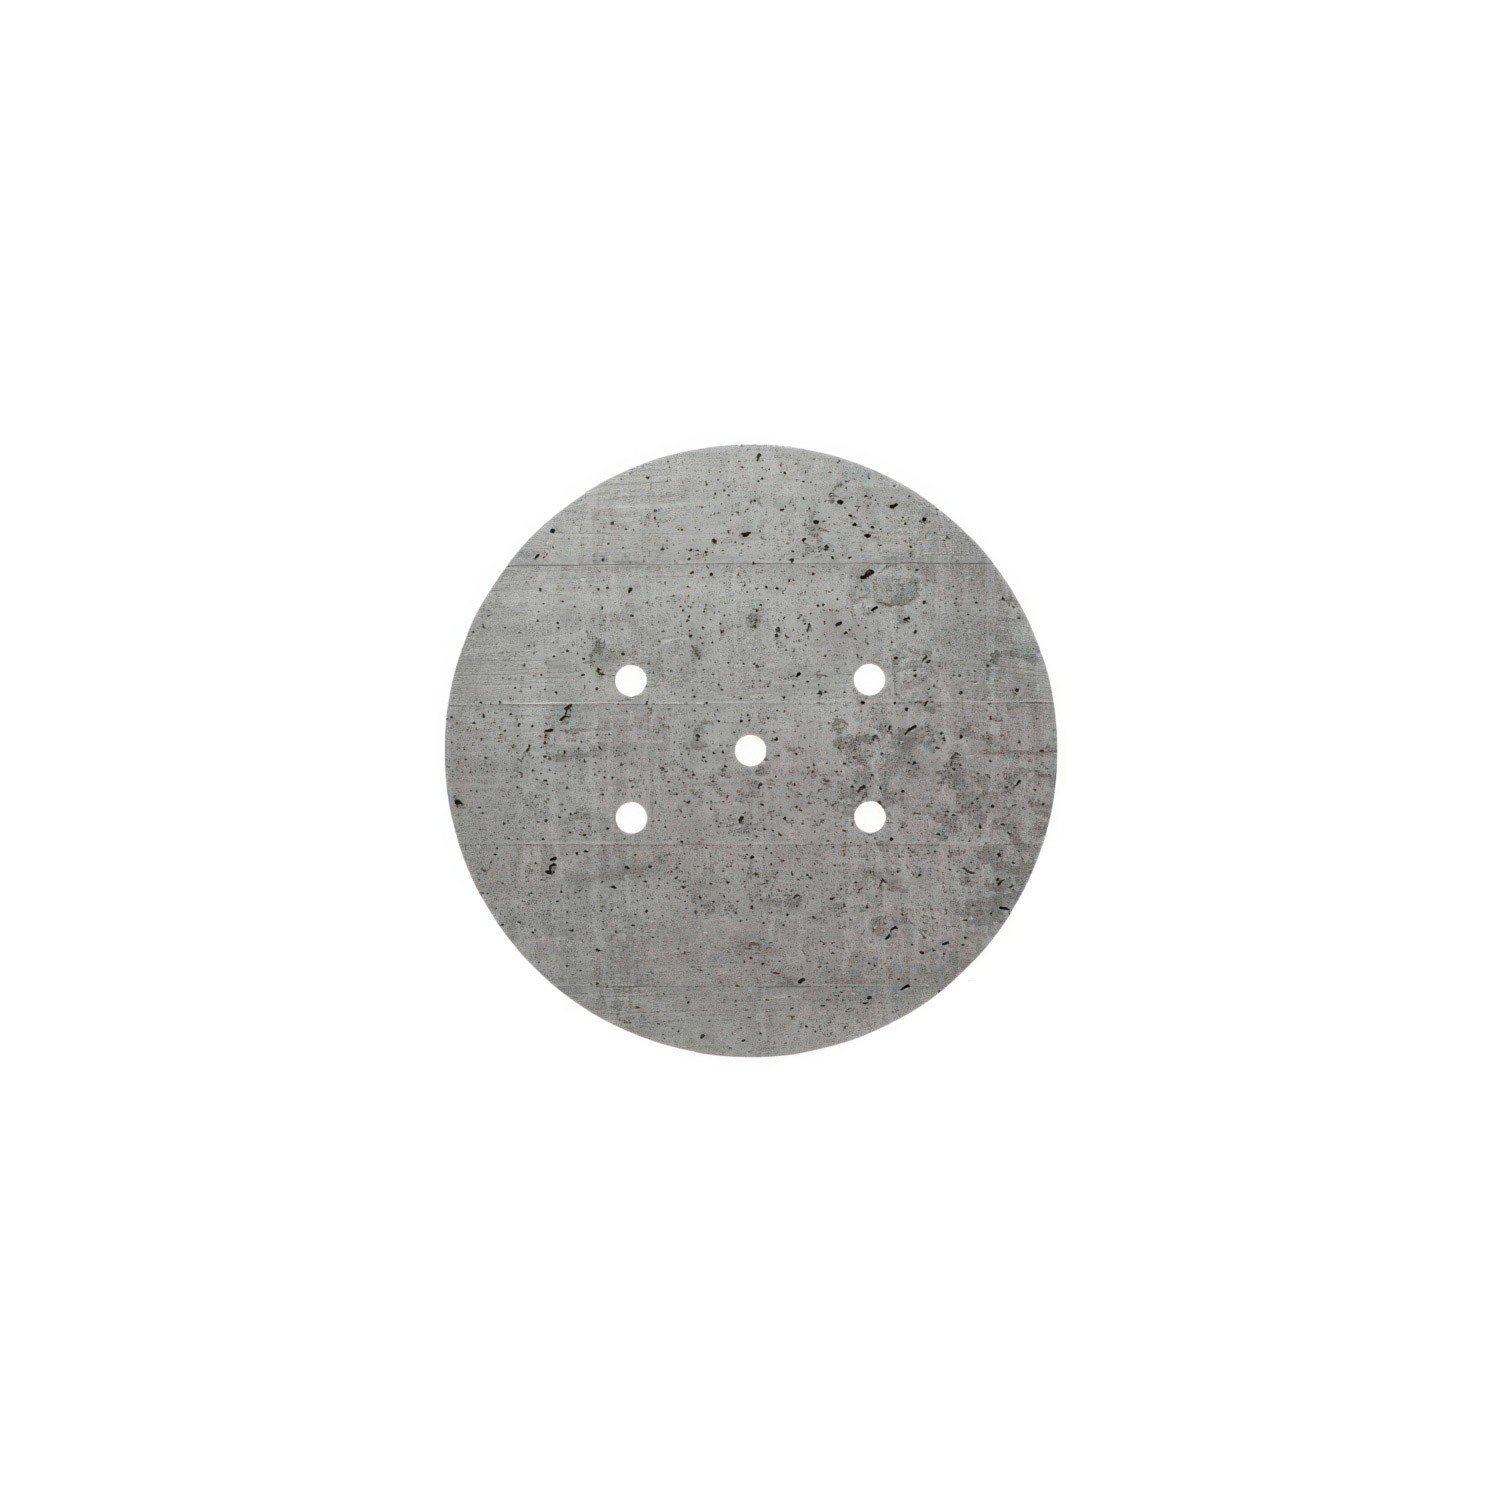 Rundes 5-Loch und 4 Seitenlöchern Lampenbaldachin, Rose-One-Abdeckung, 200 mm Durchmesser